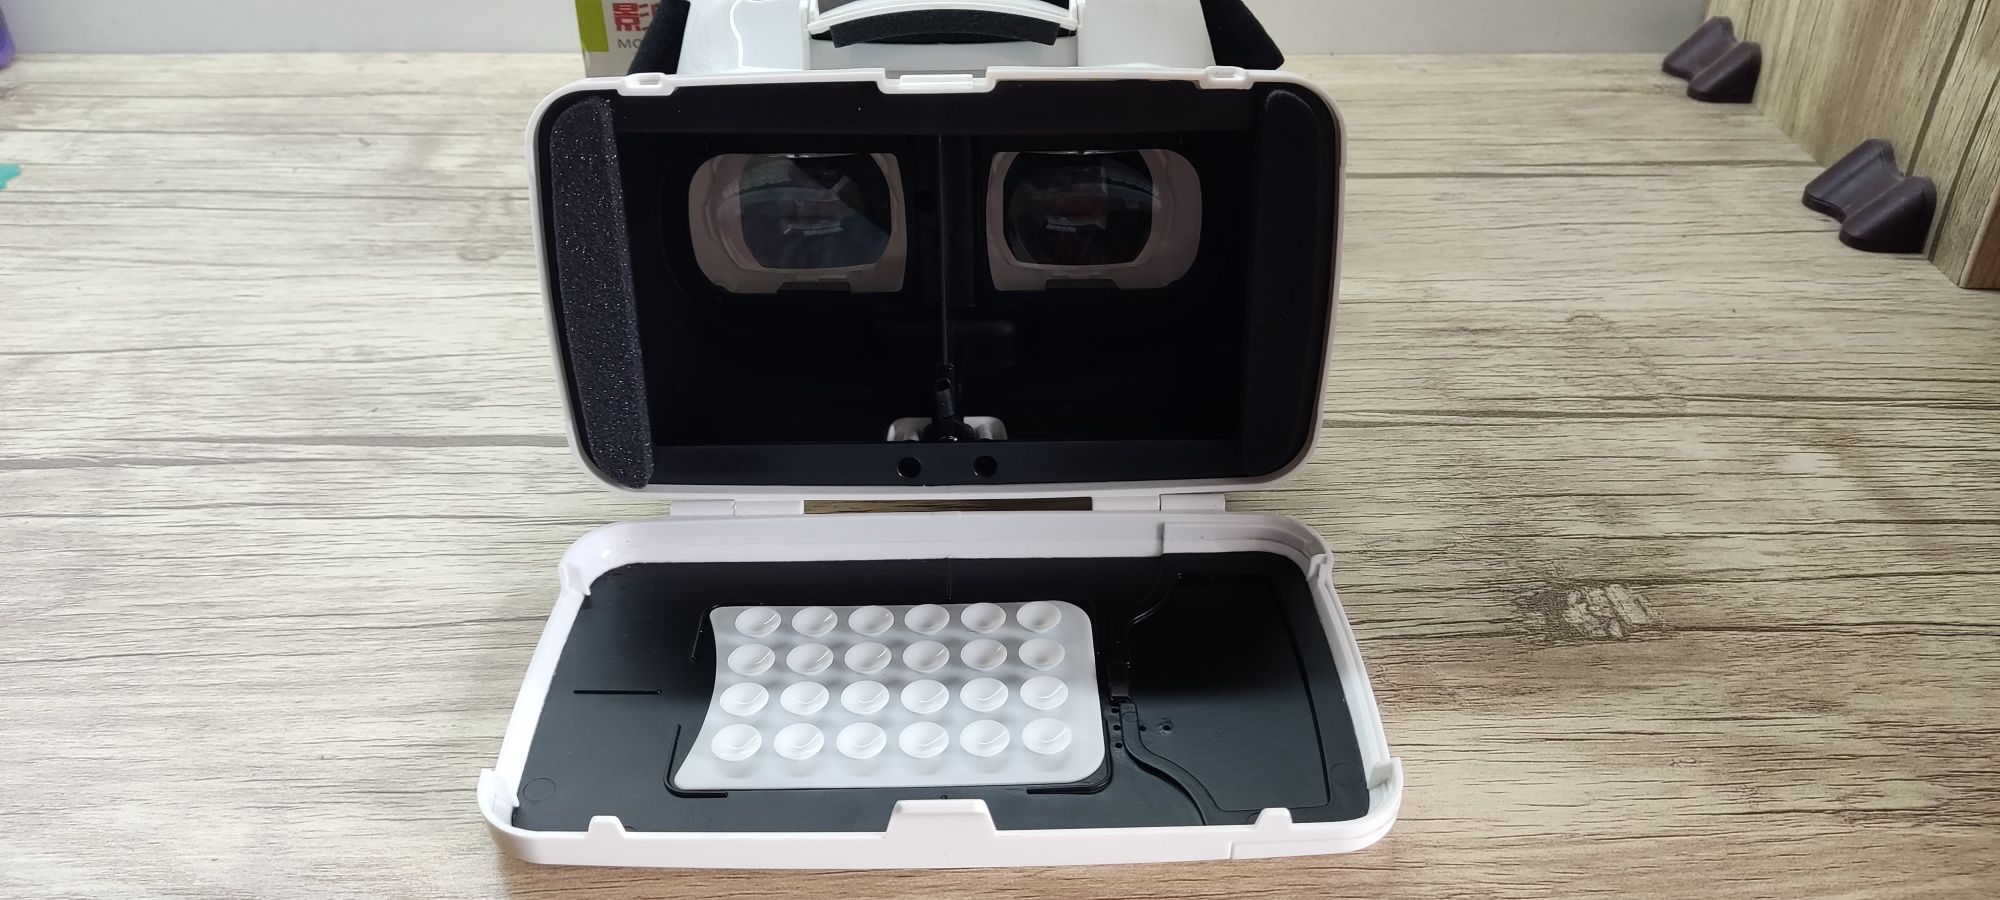 Продается очки виртуальной реальности VR BOX